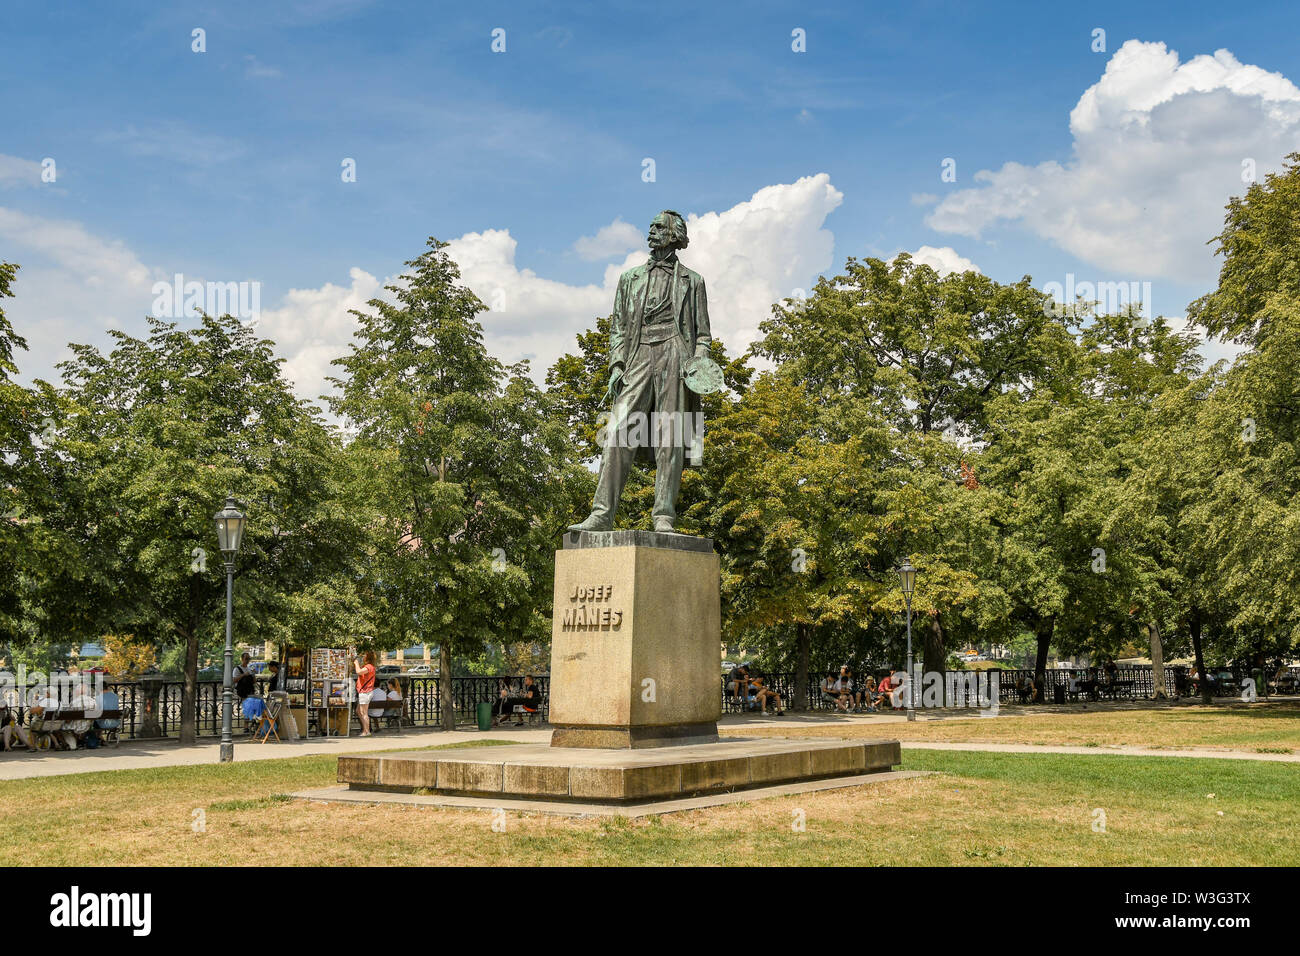 PRAGUE, RÉPUBLIQUE TCHÈQUE - AOÛT 2018 : Statue de Josef Manes dans un jardin public dans le centre-ville de Prague. Banque D'Images